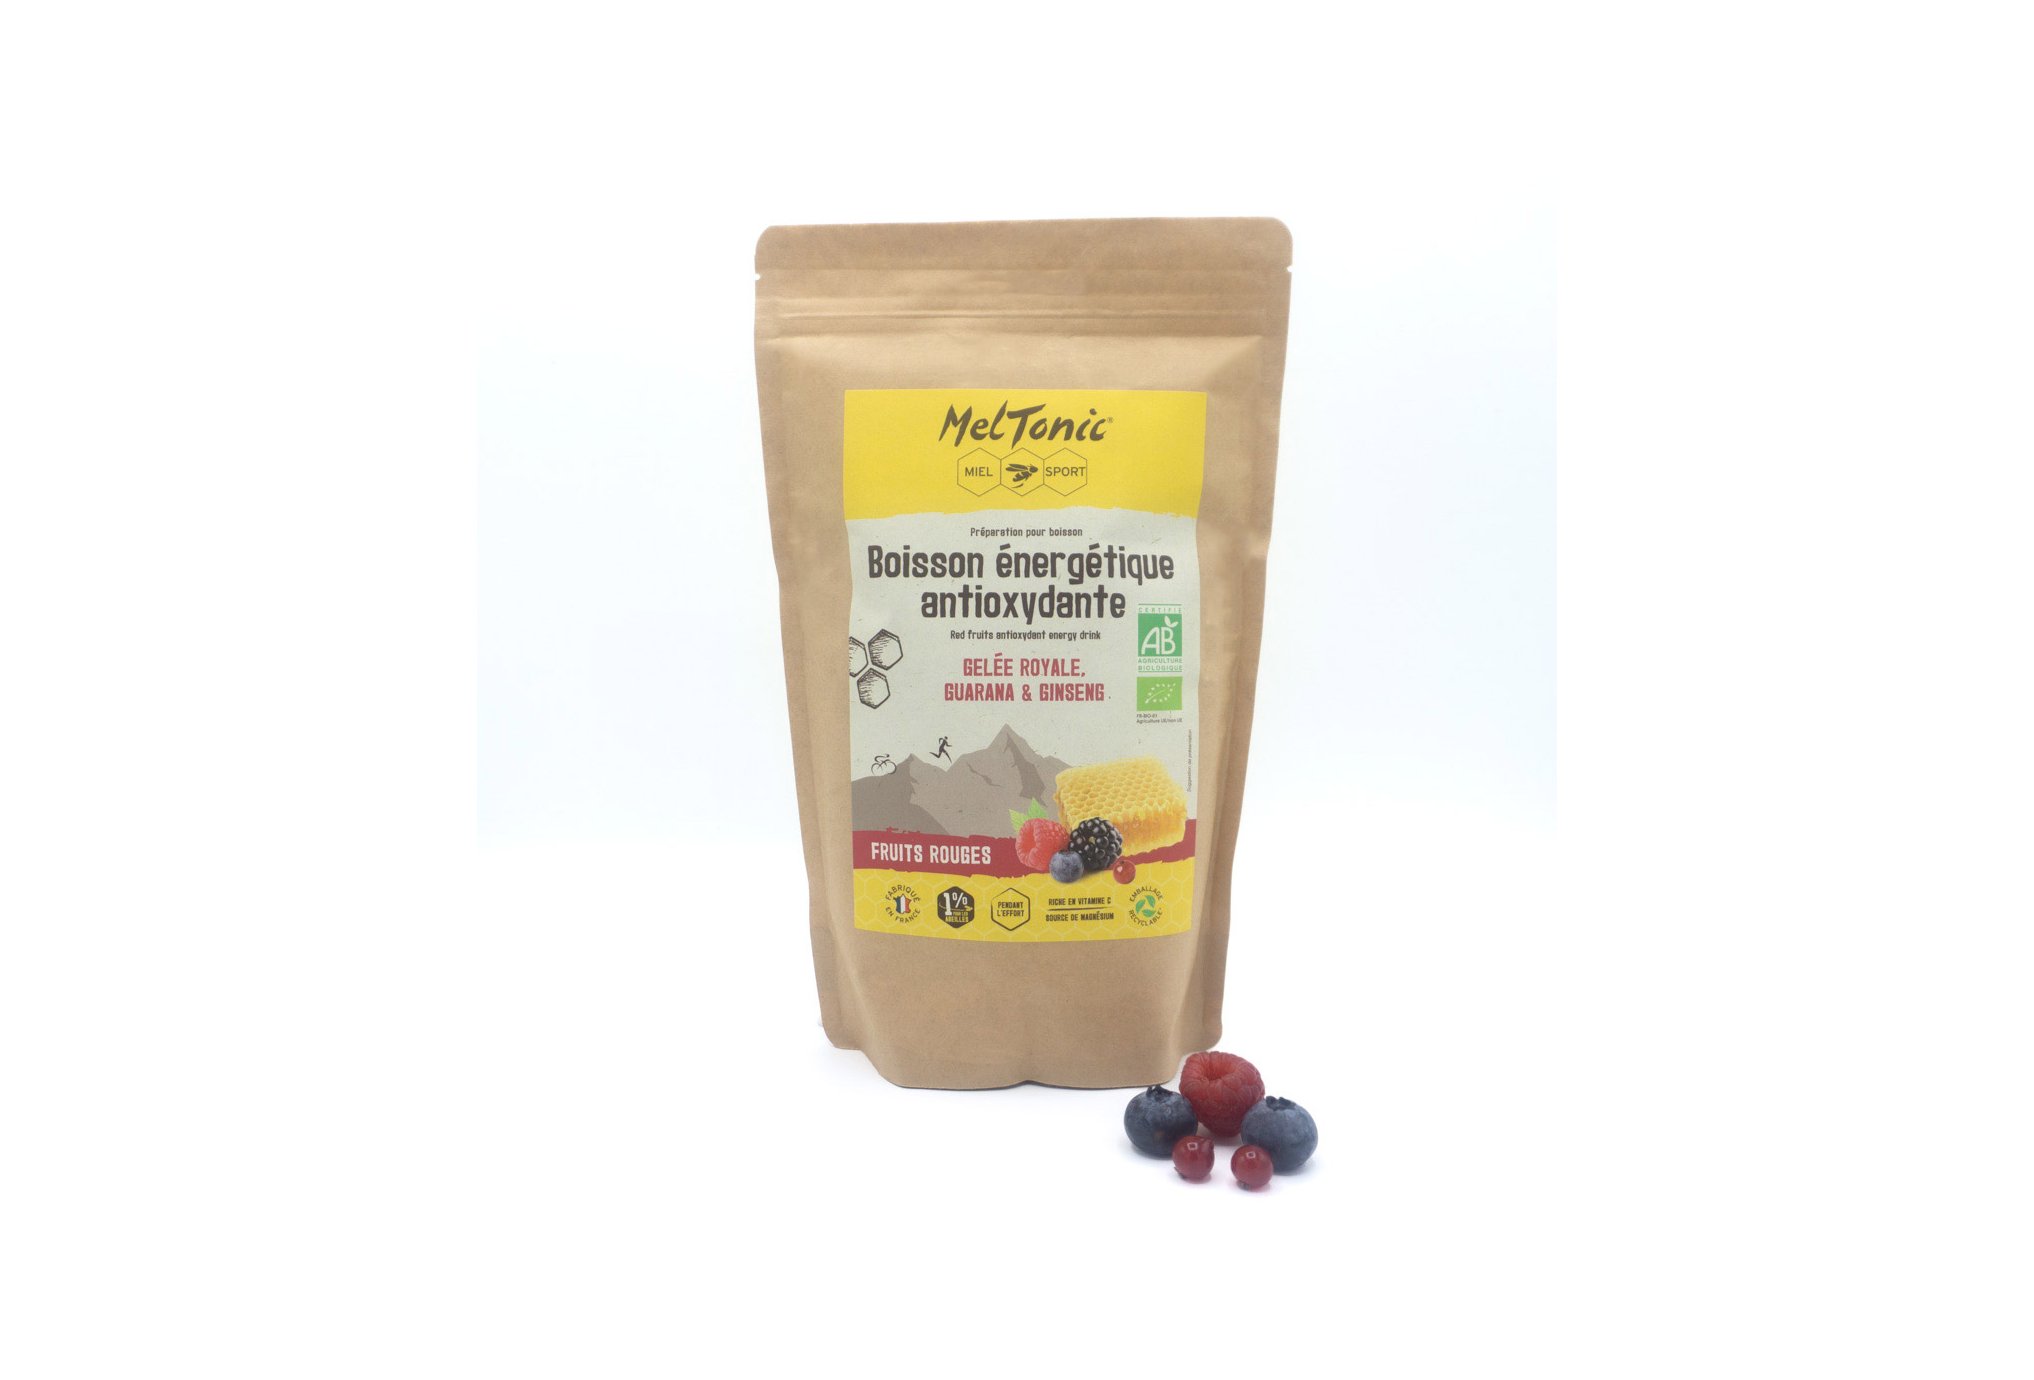 MelTonic Boisson Énergétique Antioxydante Bio 700g - Fruits rouges Diététique Boissons